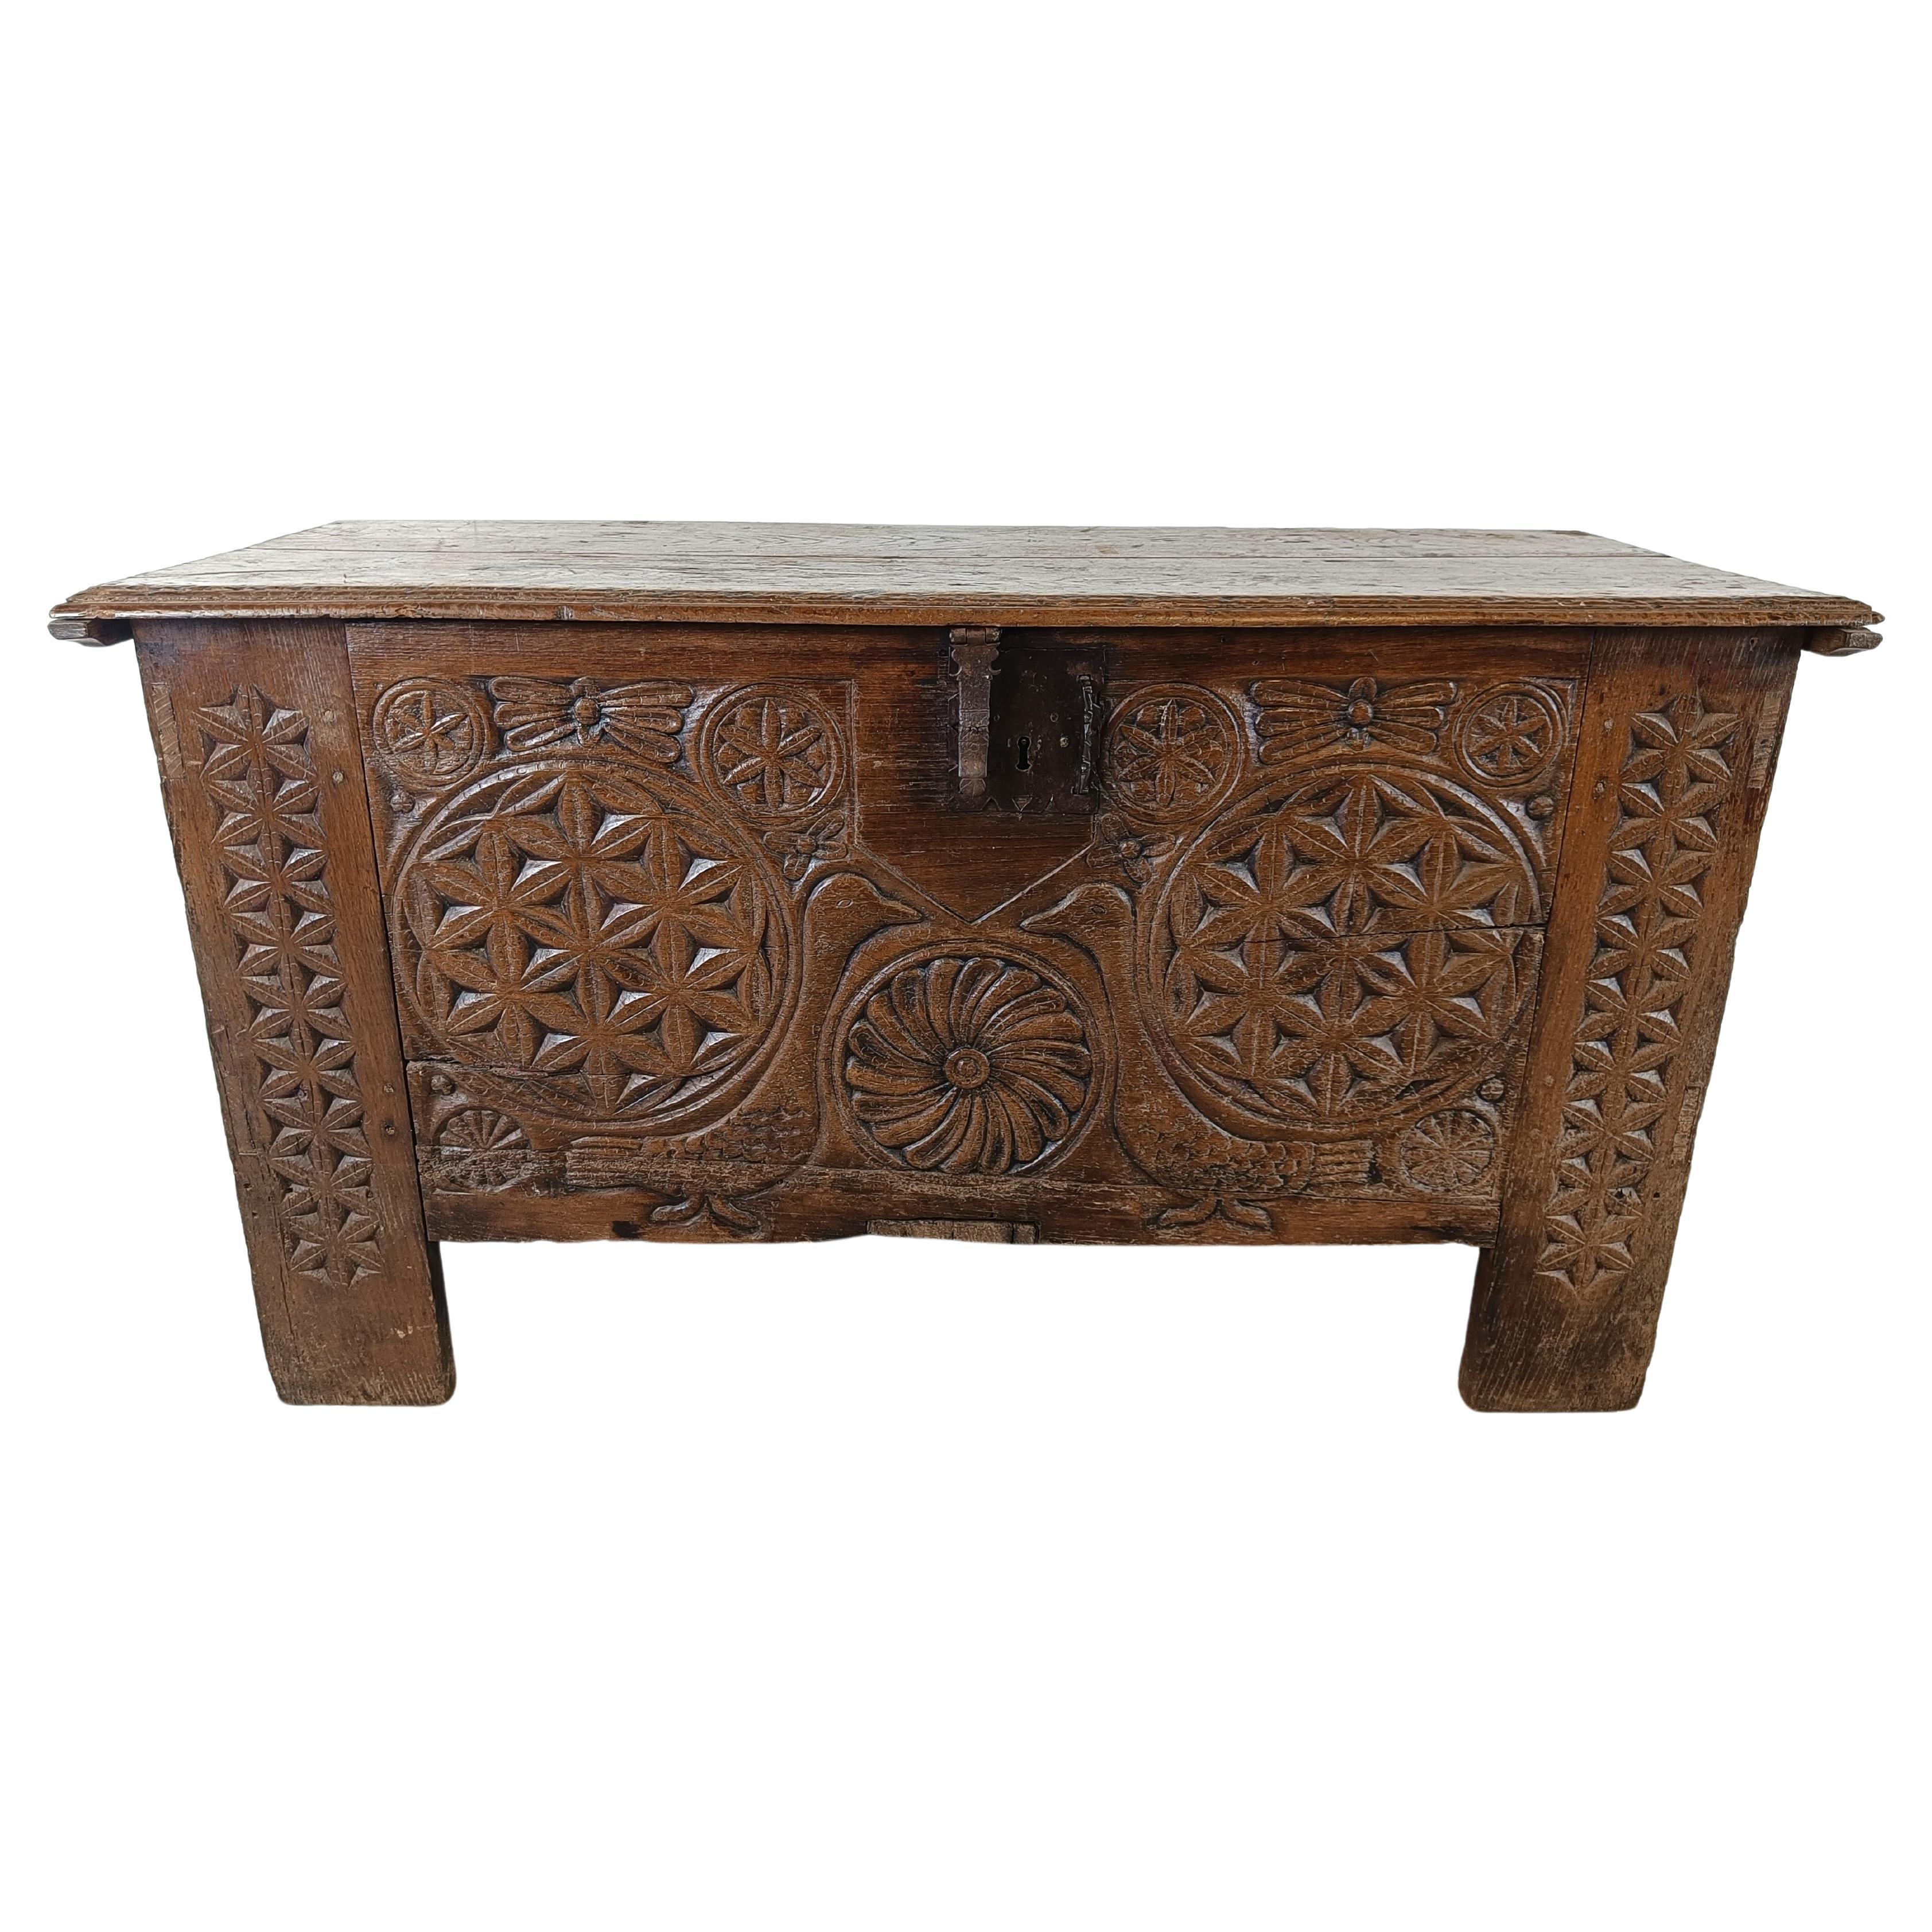 A large flemish 18th century oak chest For Sale